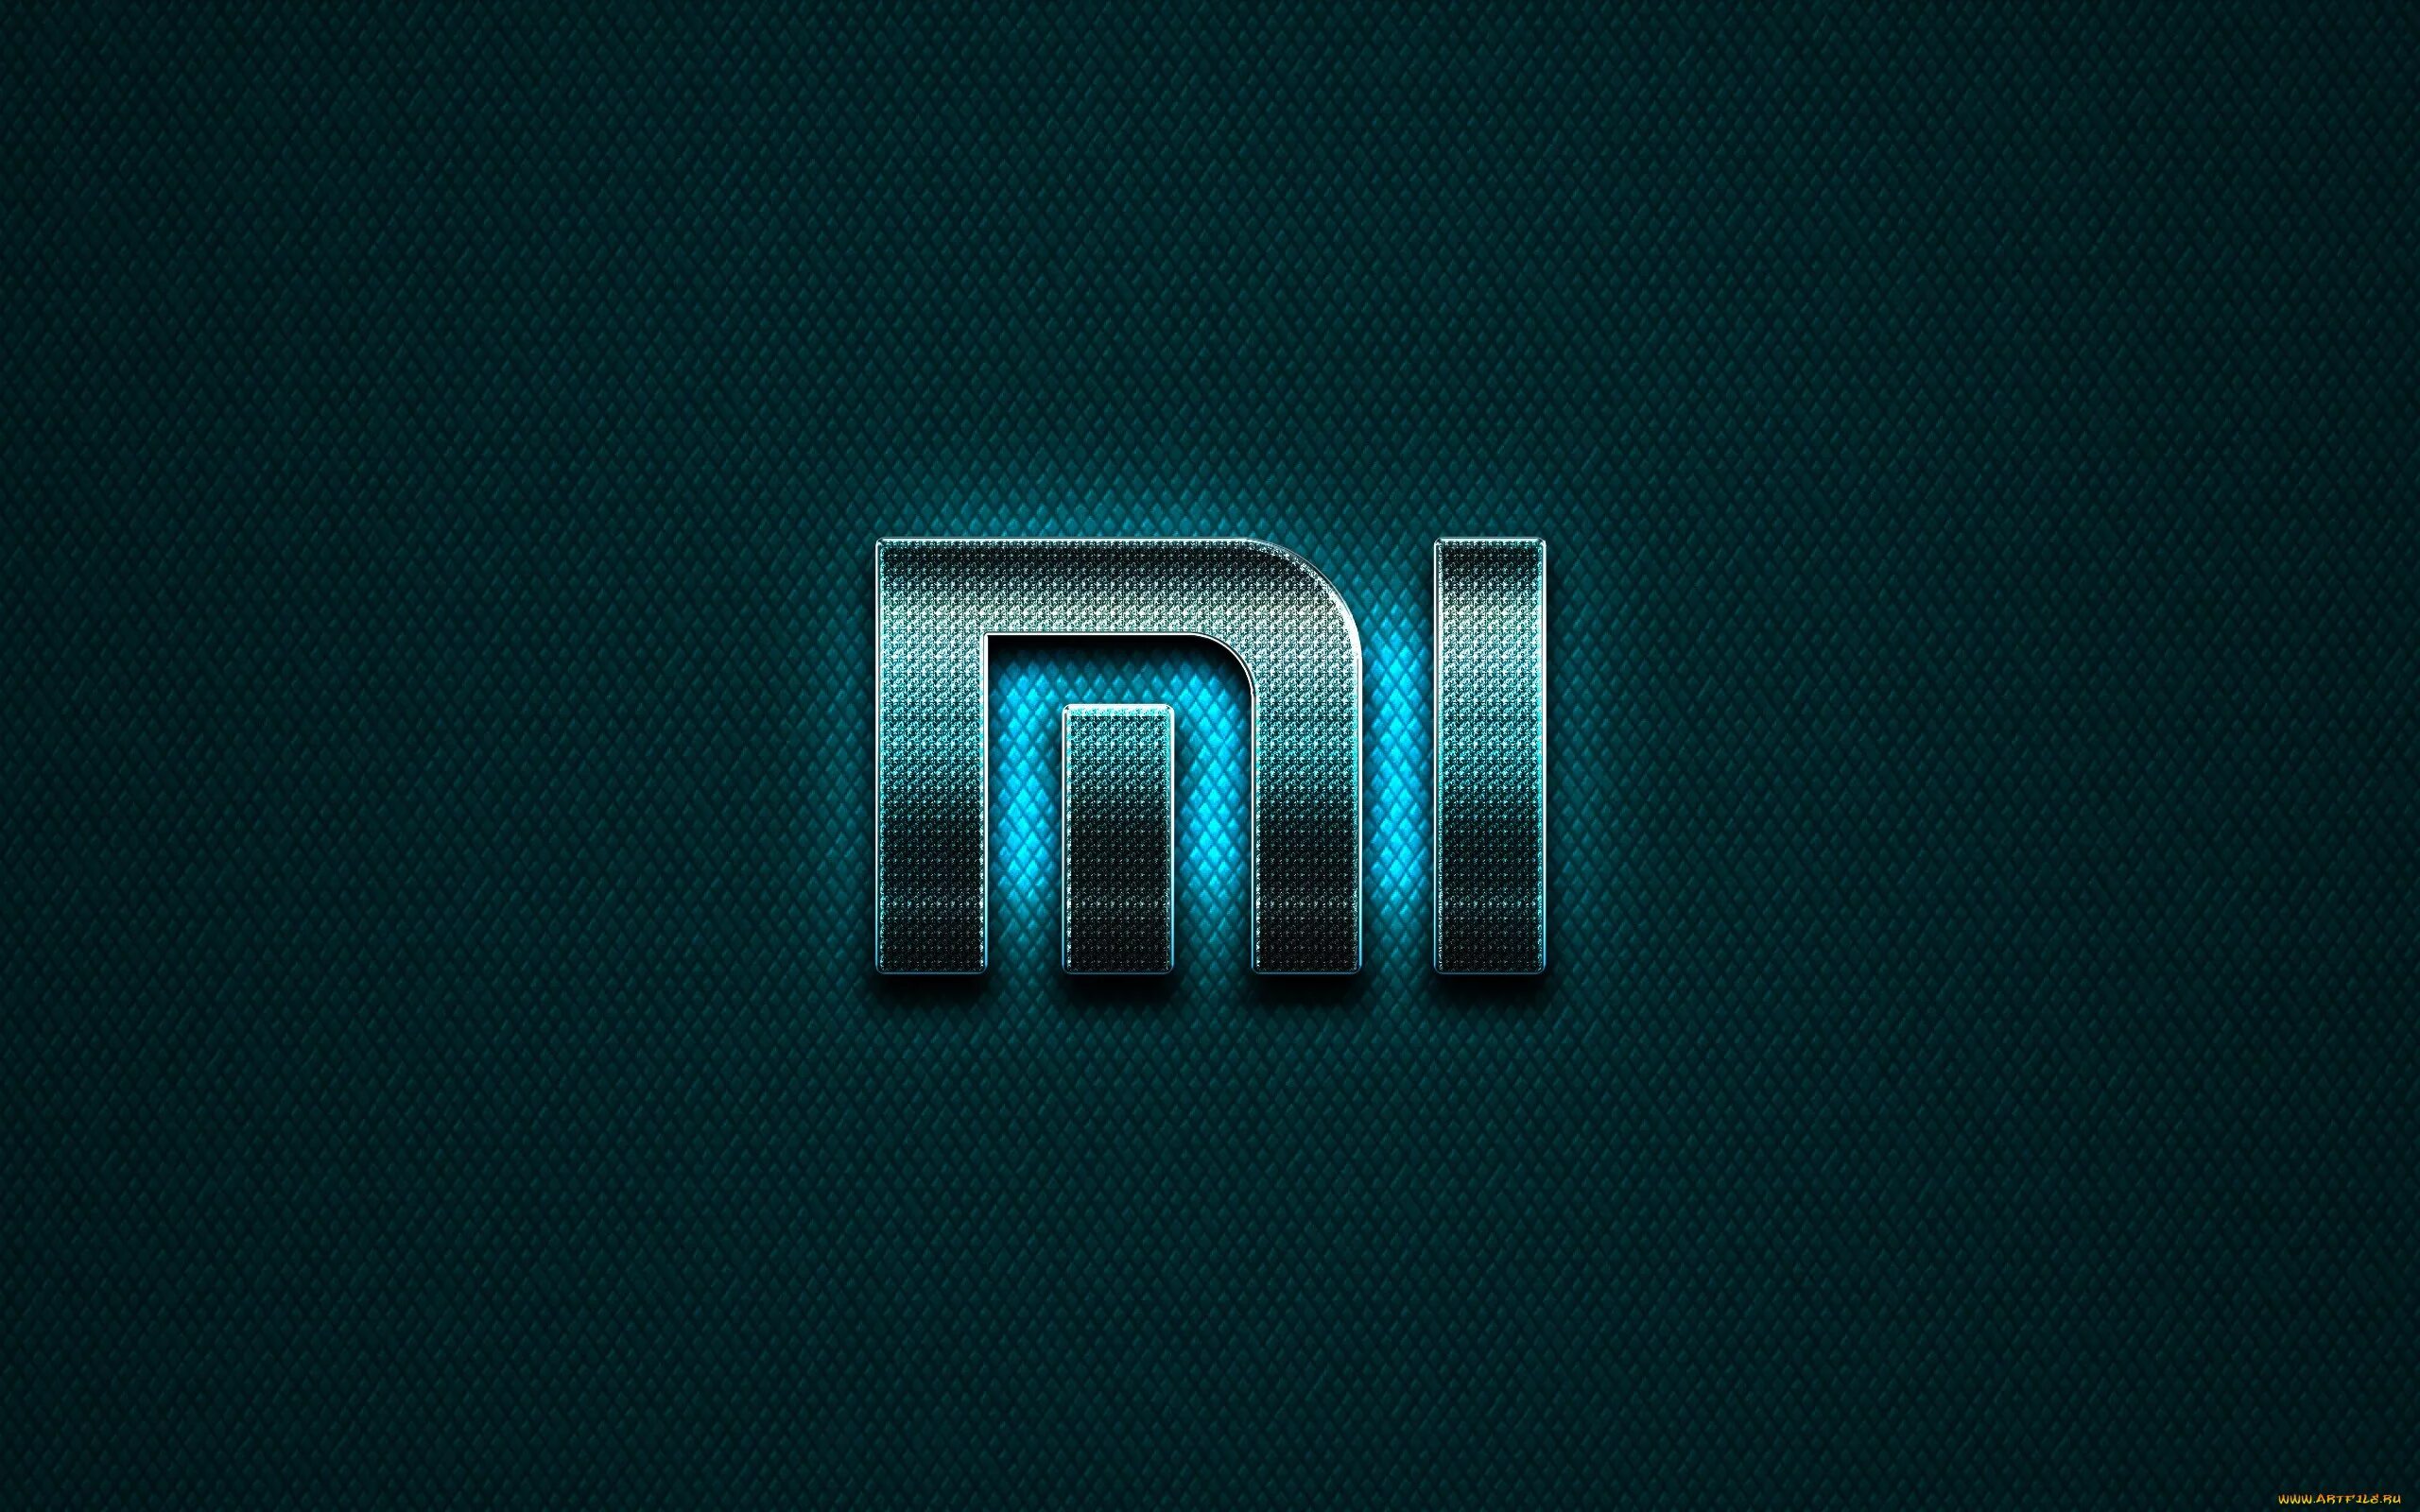 Логотип Xiaomi на Redmi 10. Обои mi. Обои с логотипом Xiaomi. Красивый логотип Xiaomi.